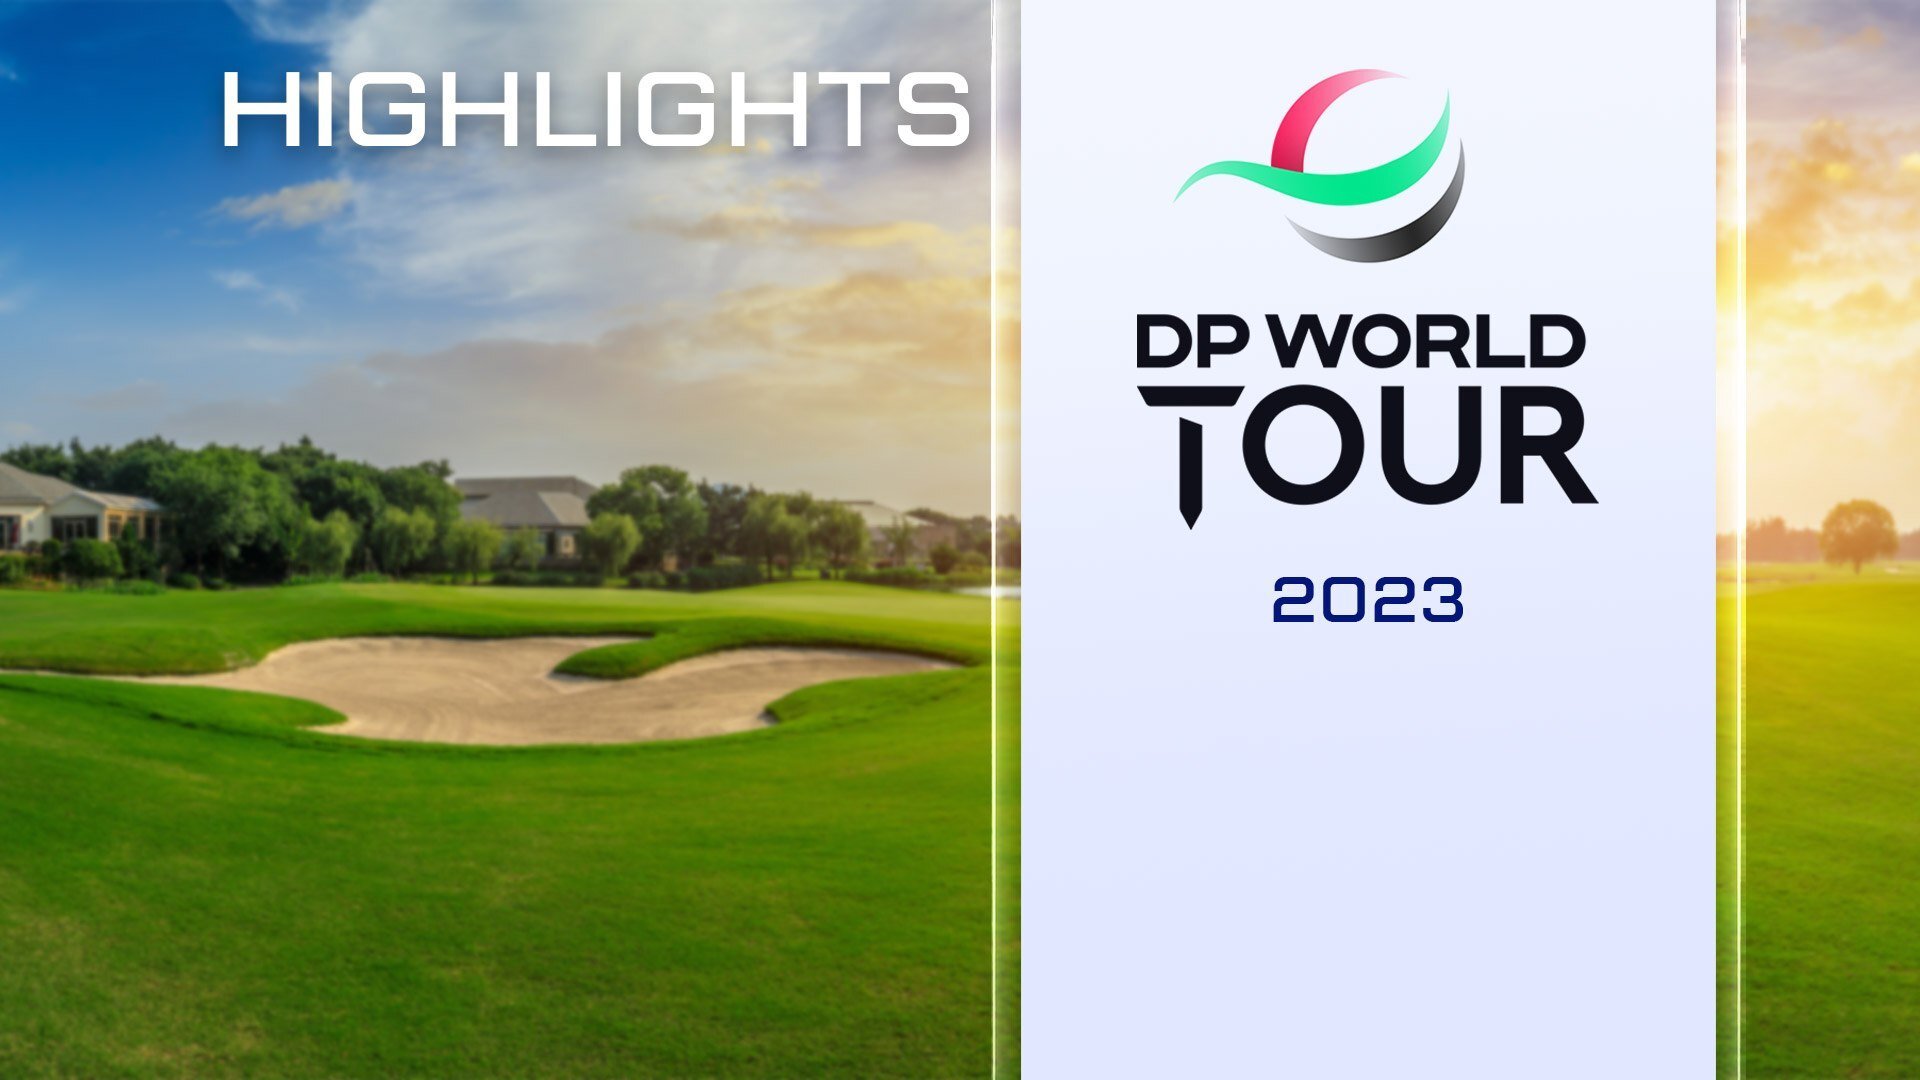 Guarda Highlights DP World Tour online